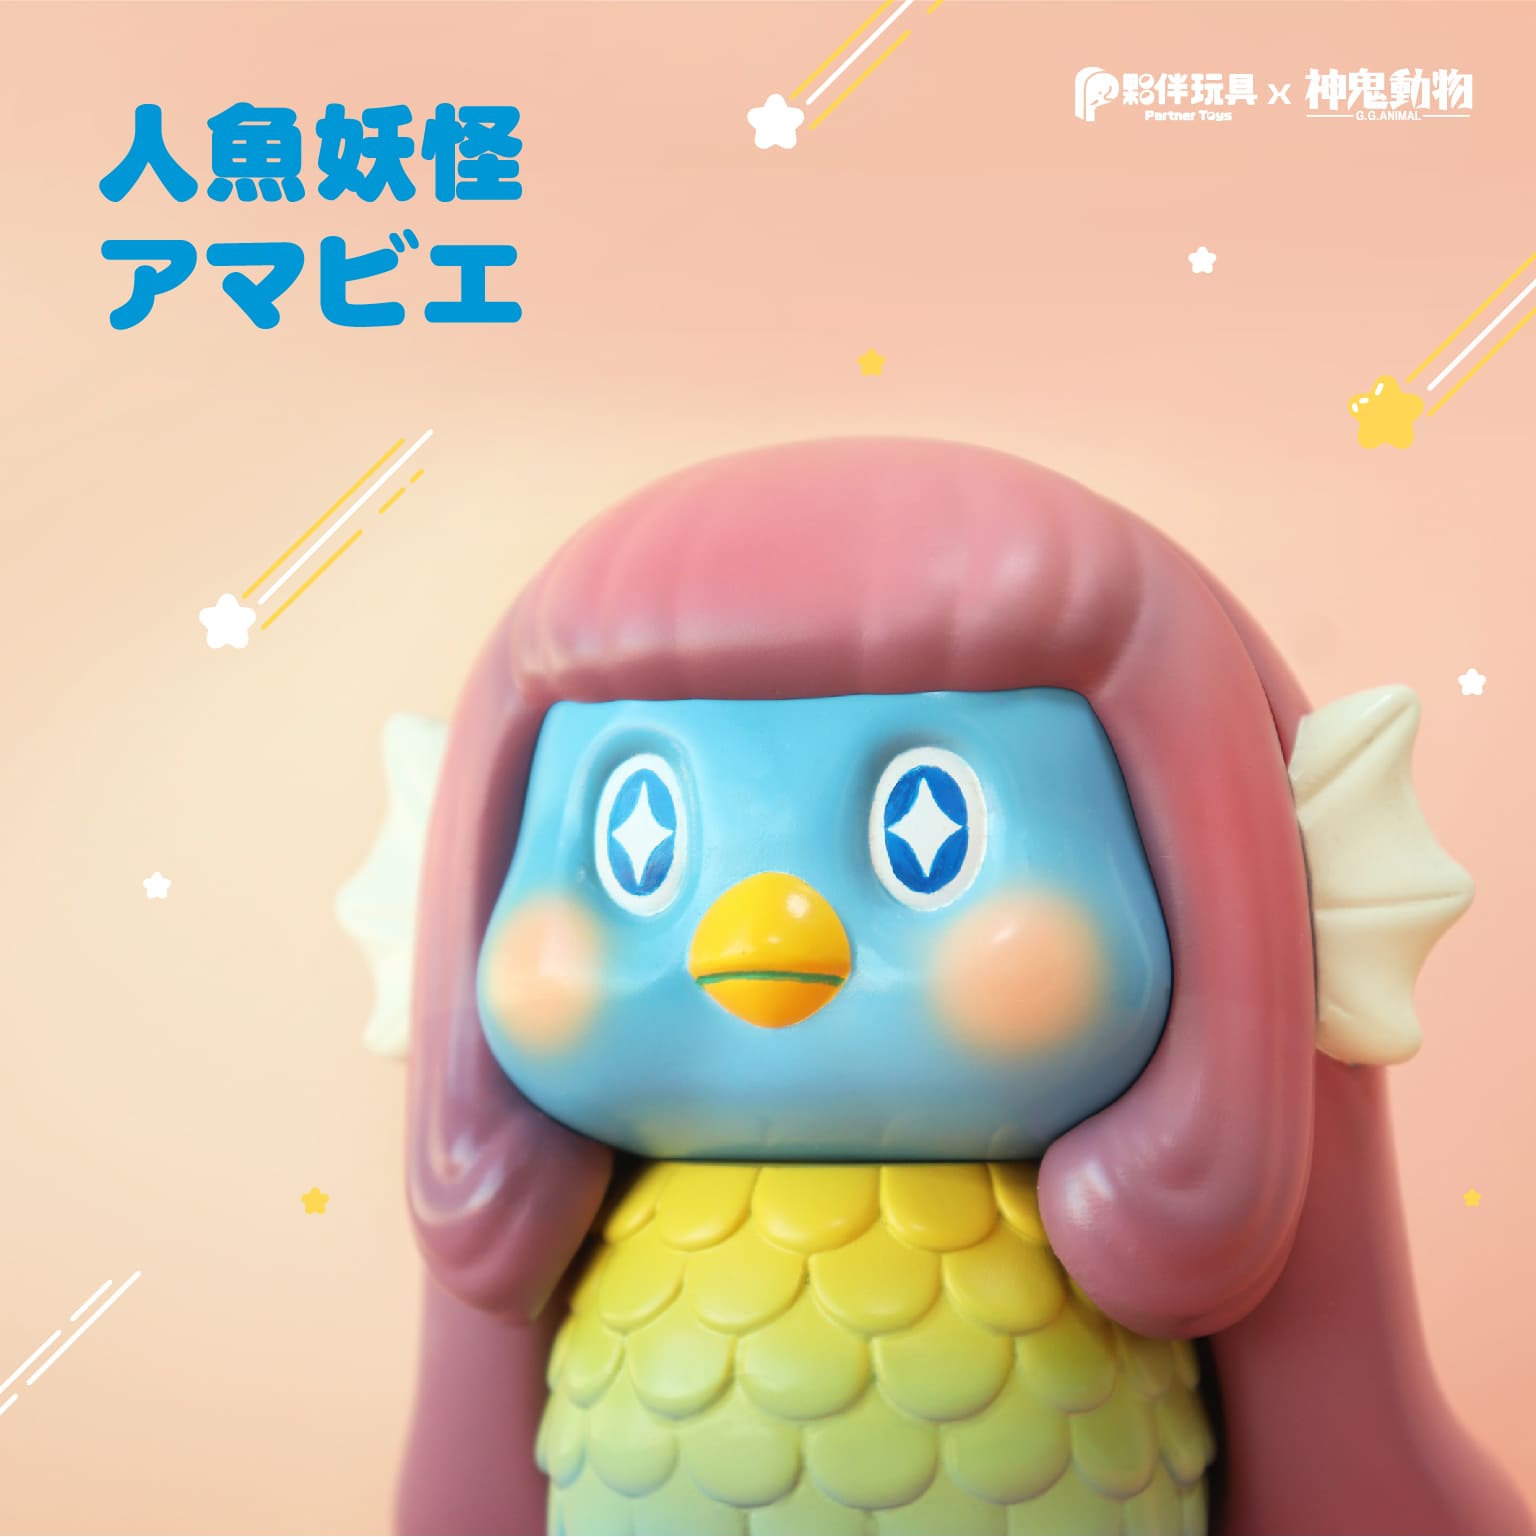 【現貨商品】限定品釋出「人魚妖怪」軟膠玩具